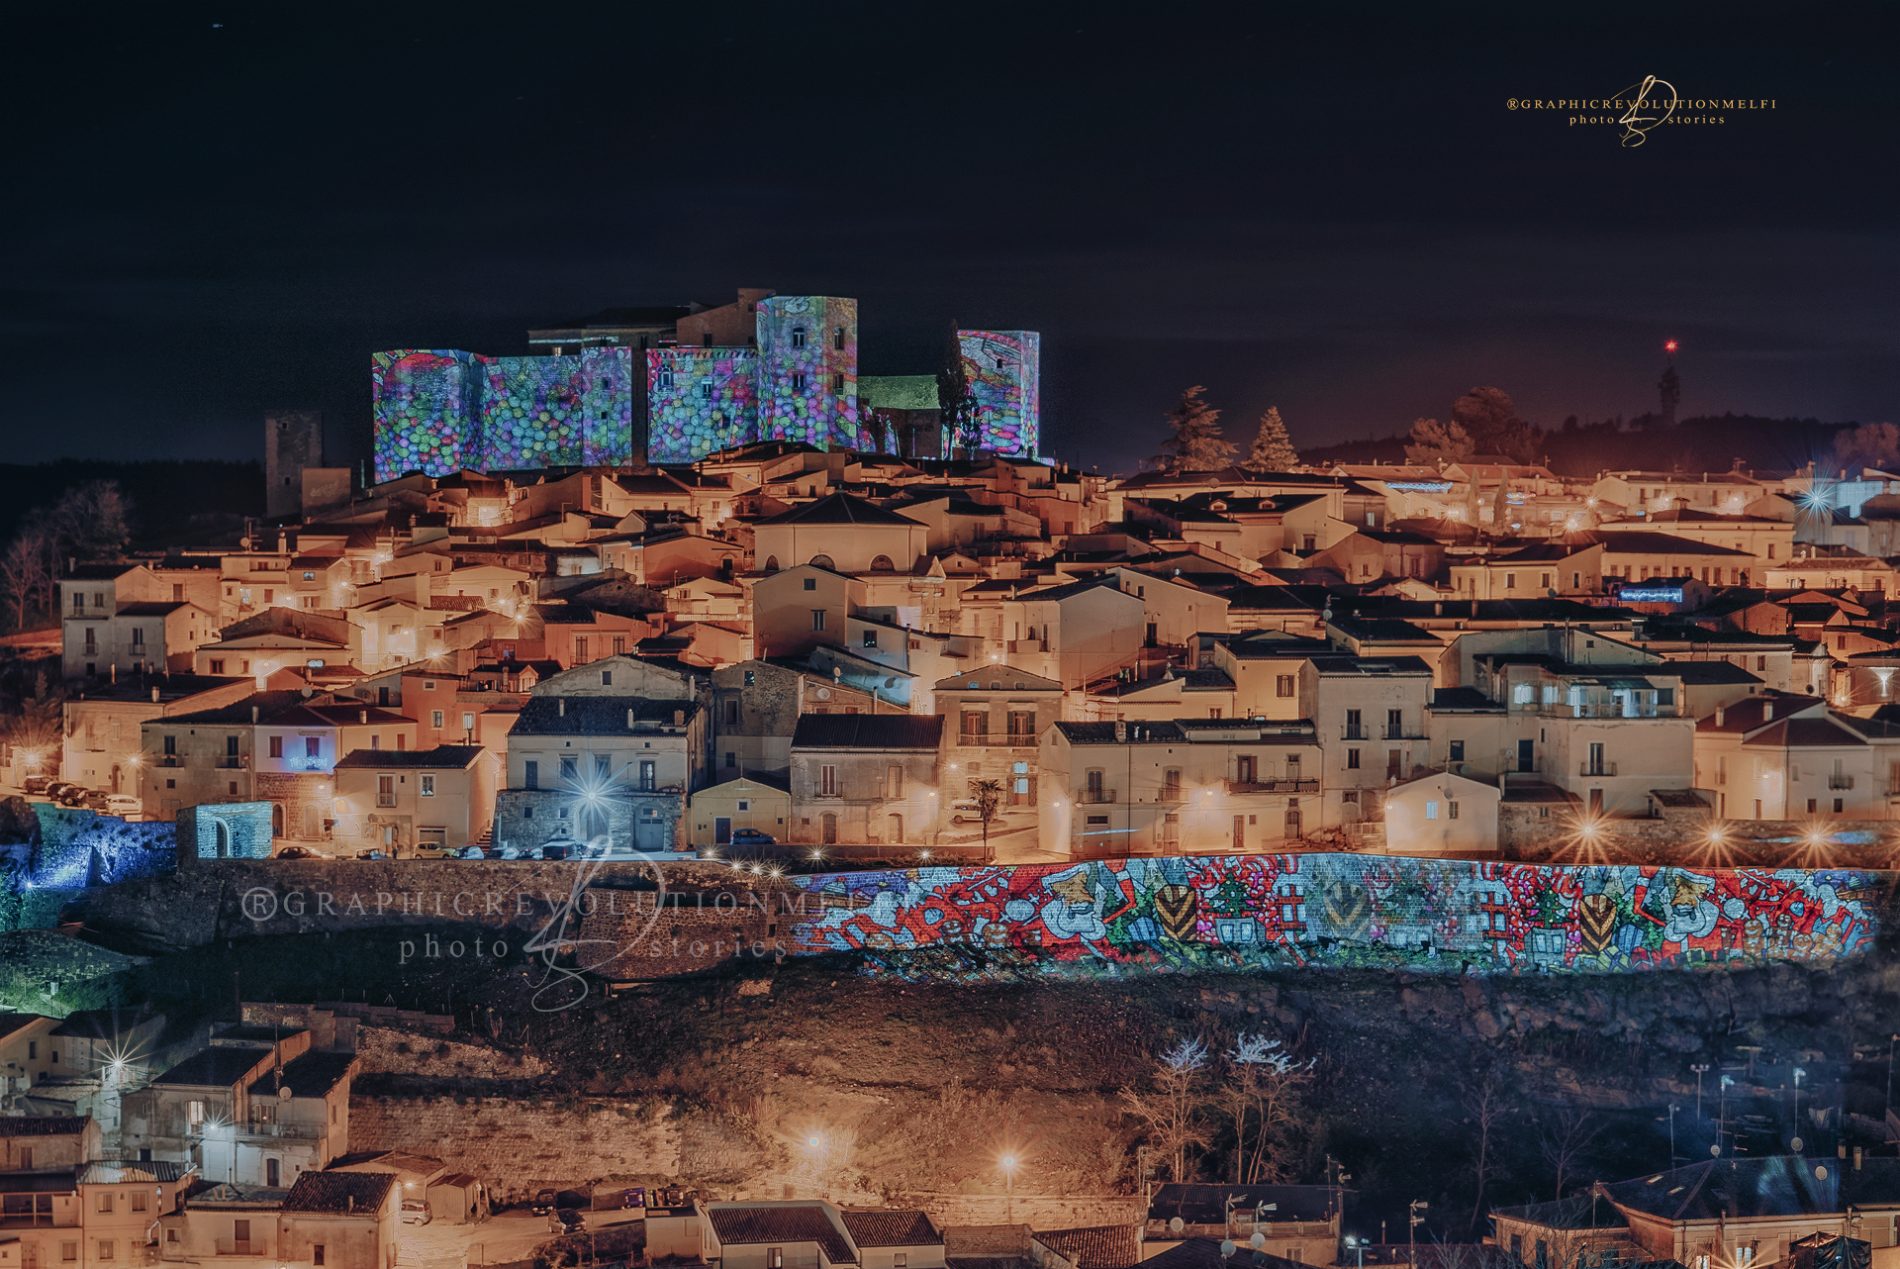 Melfi Natale 2021 le foto delle luminarie e videomapping belvedere cappuccini castello di melfi mura millenarie